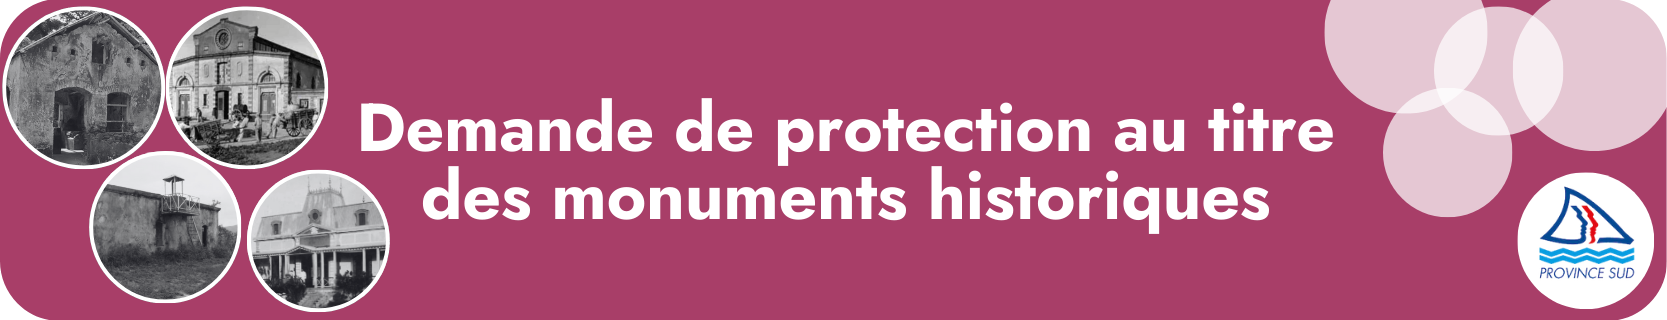 Demande de protection au titre des monuments historiques